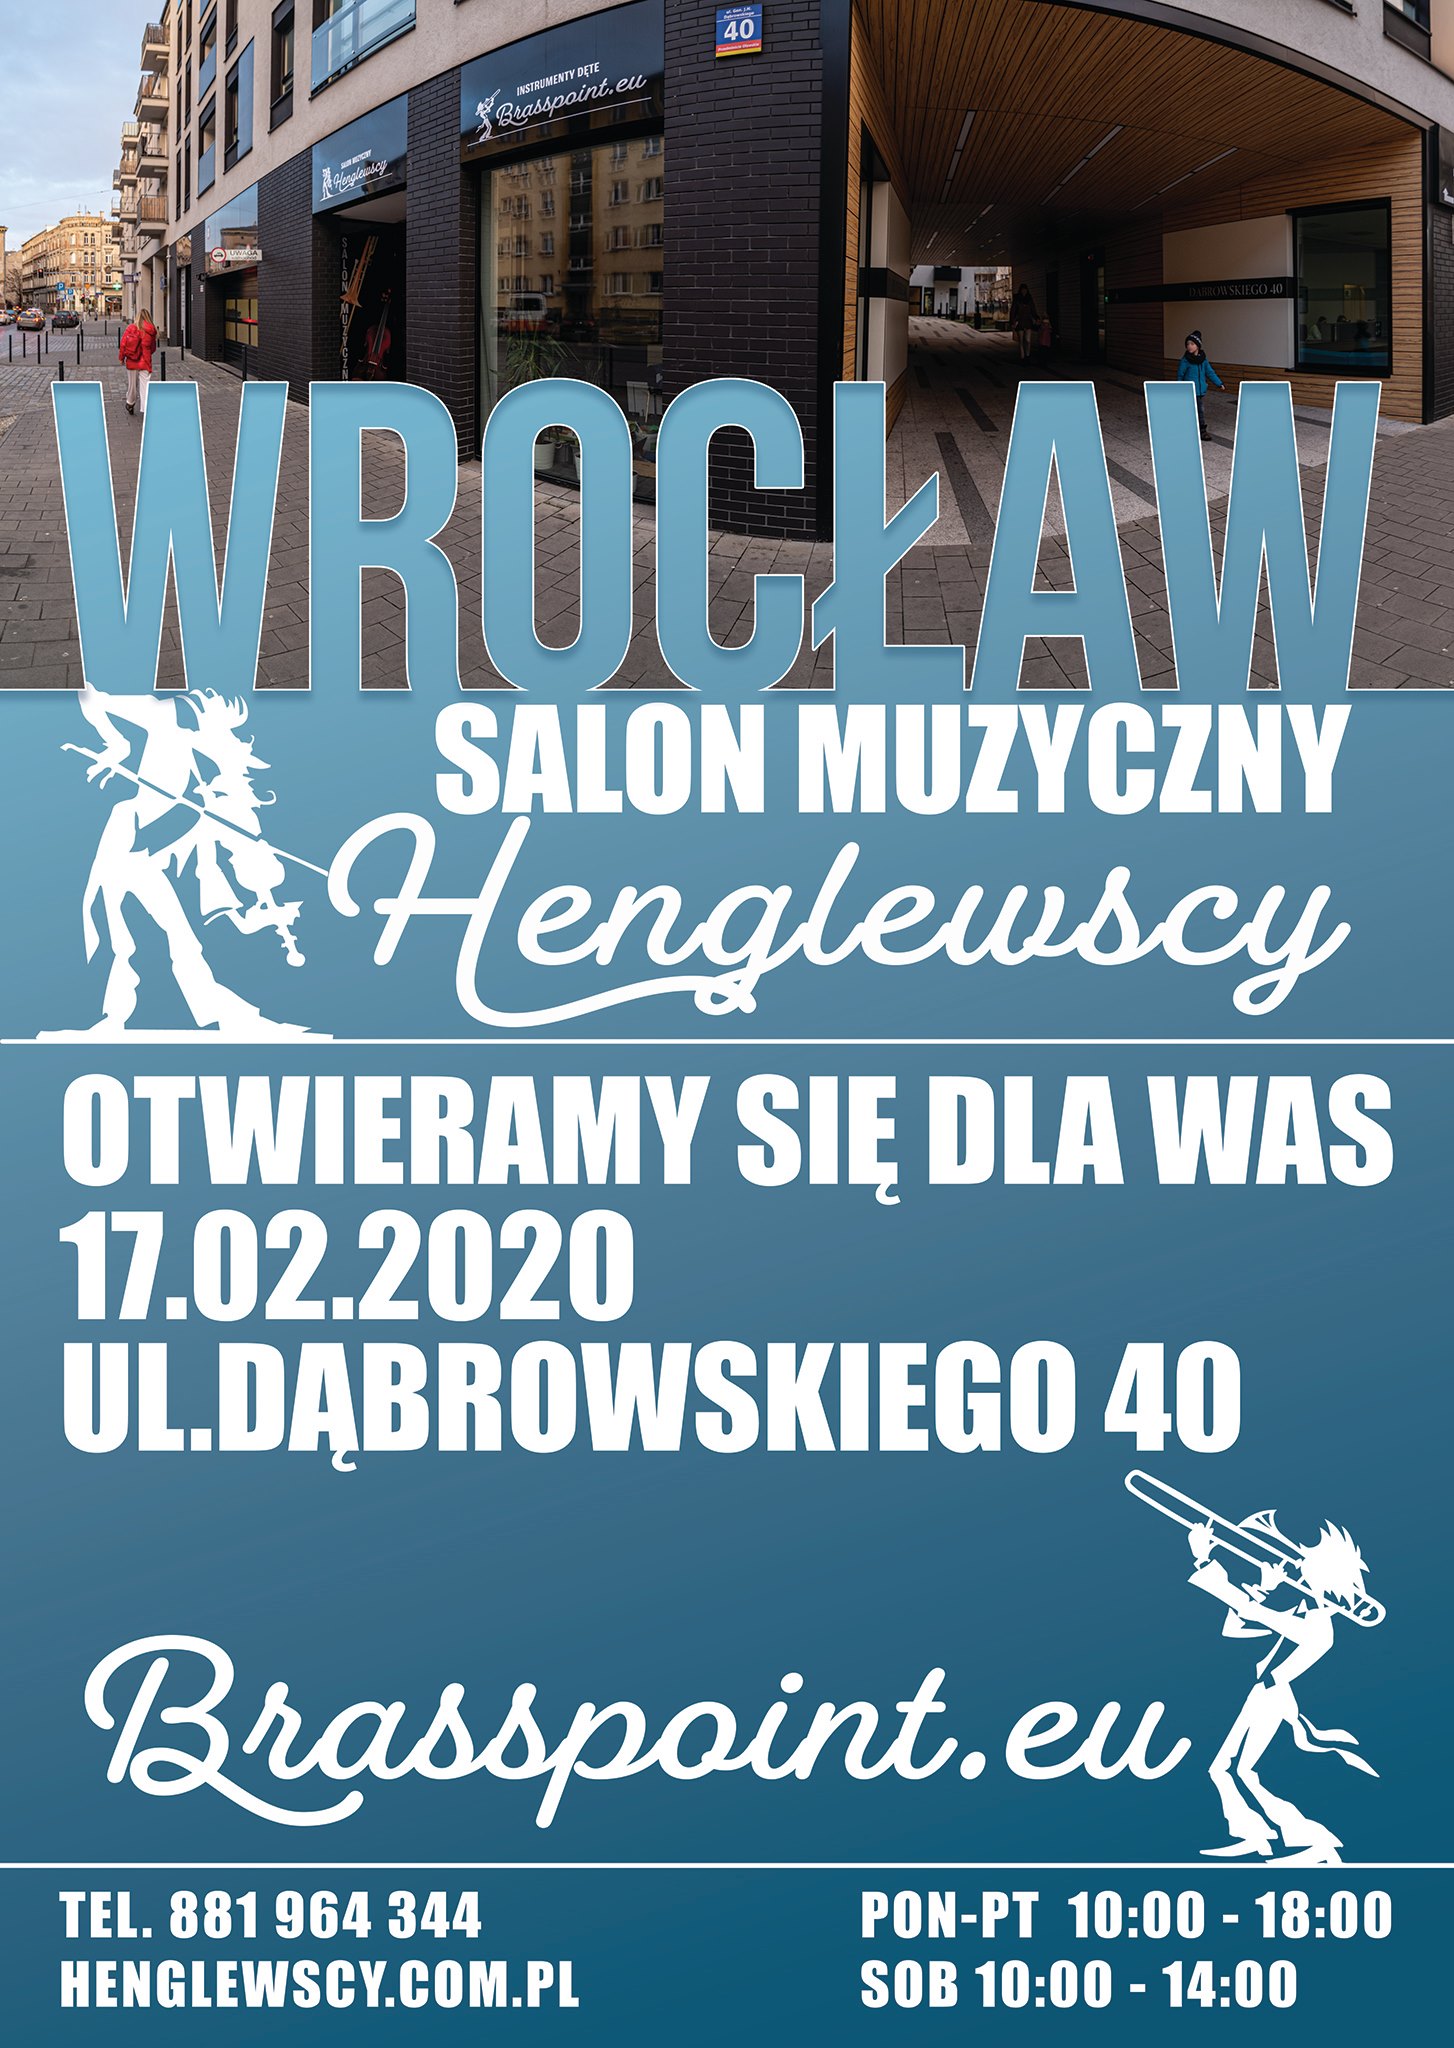 Wrocław Salon Muzyczny Henglewscy